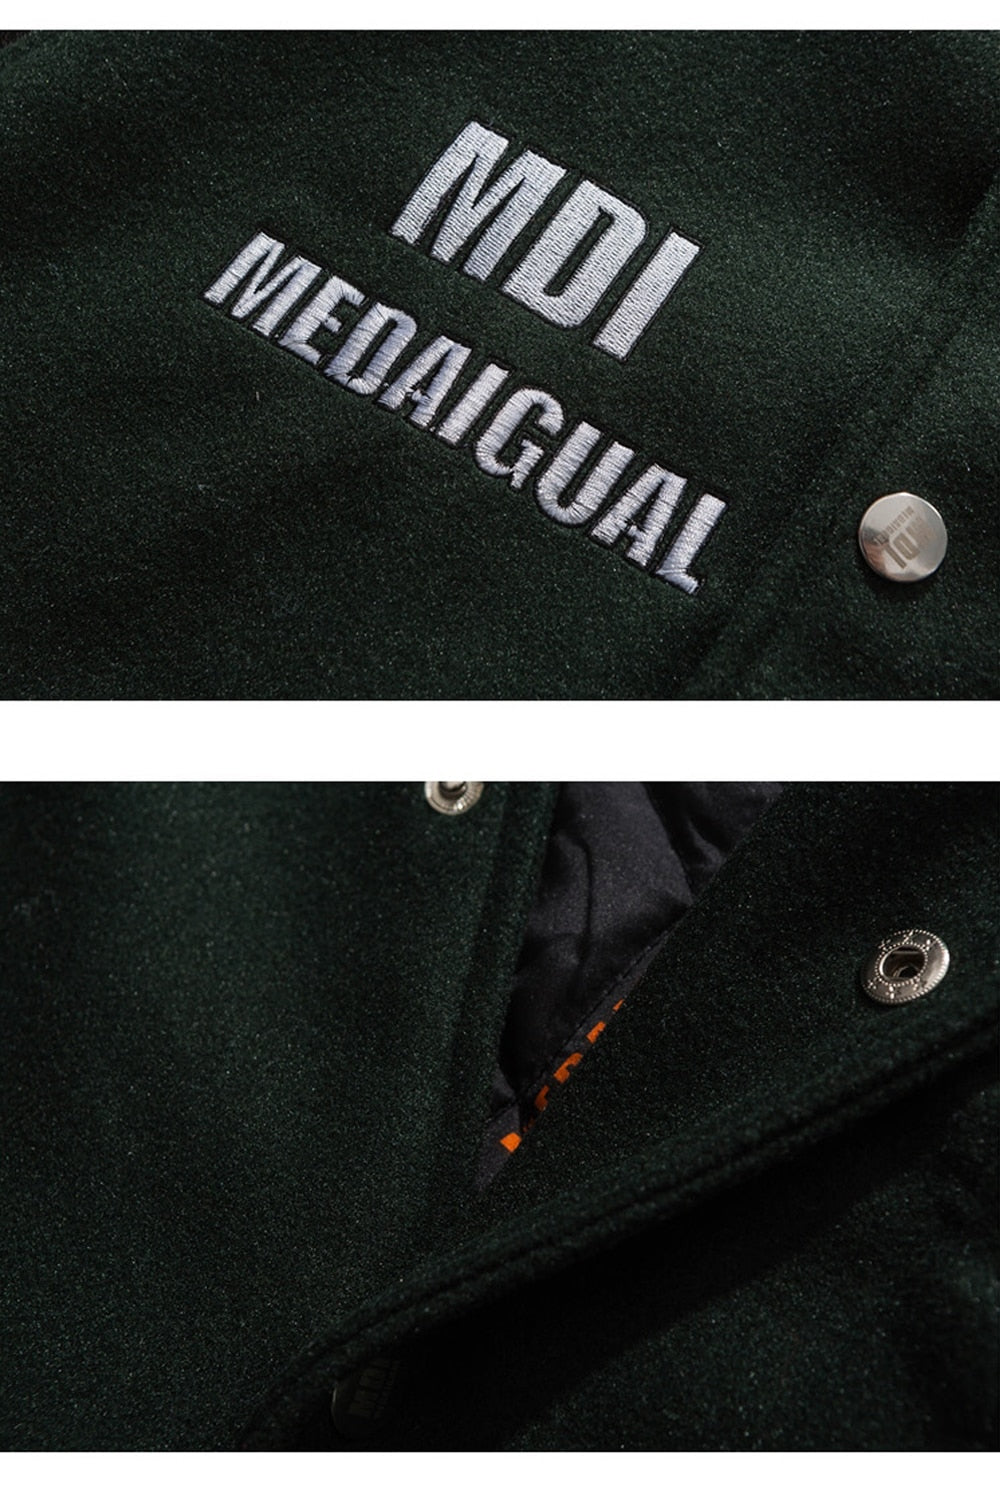 Eprezzy® - MDI MEDAIGUAL Jacket Streetwear Fashion - eprezzy.com